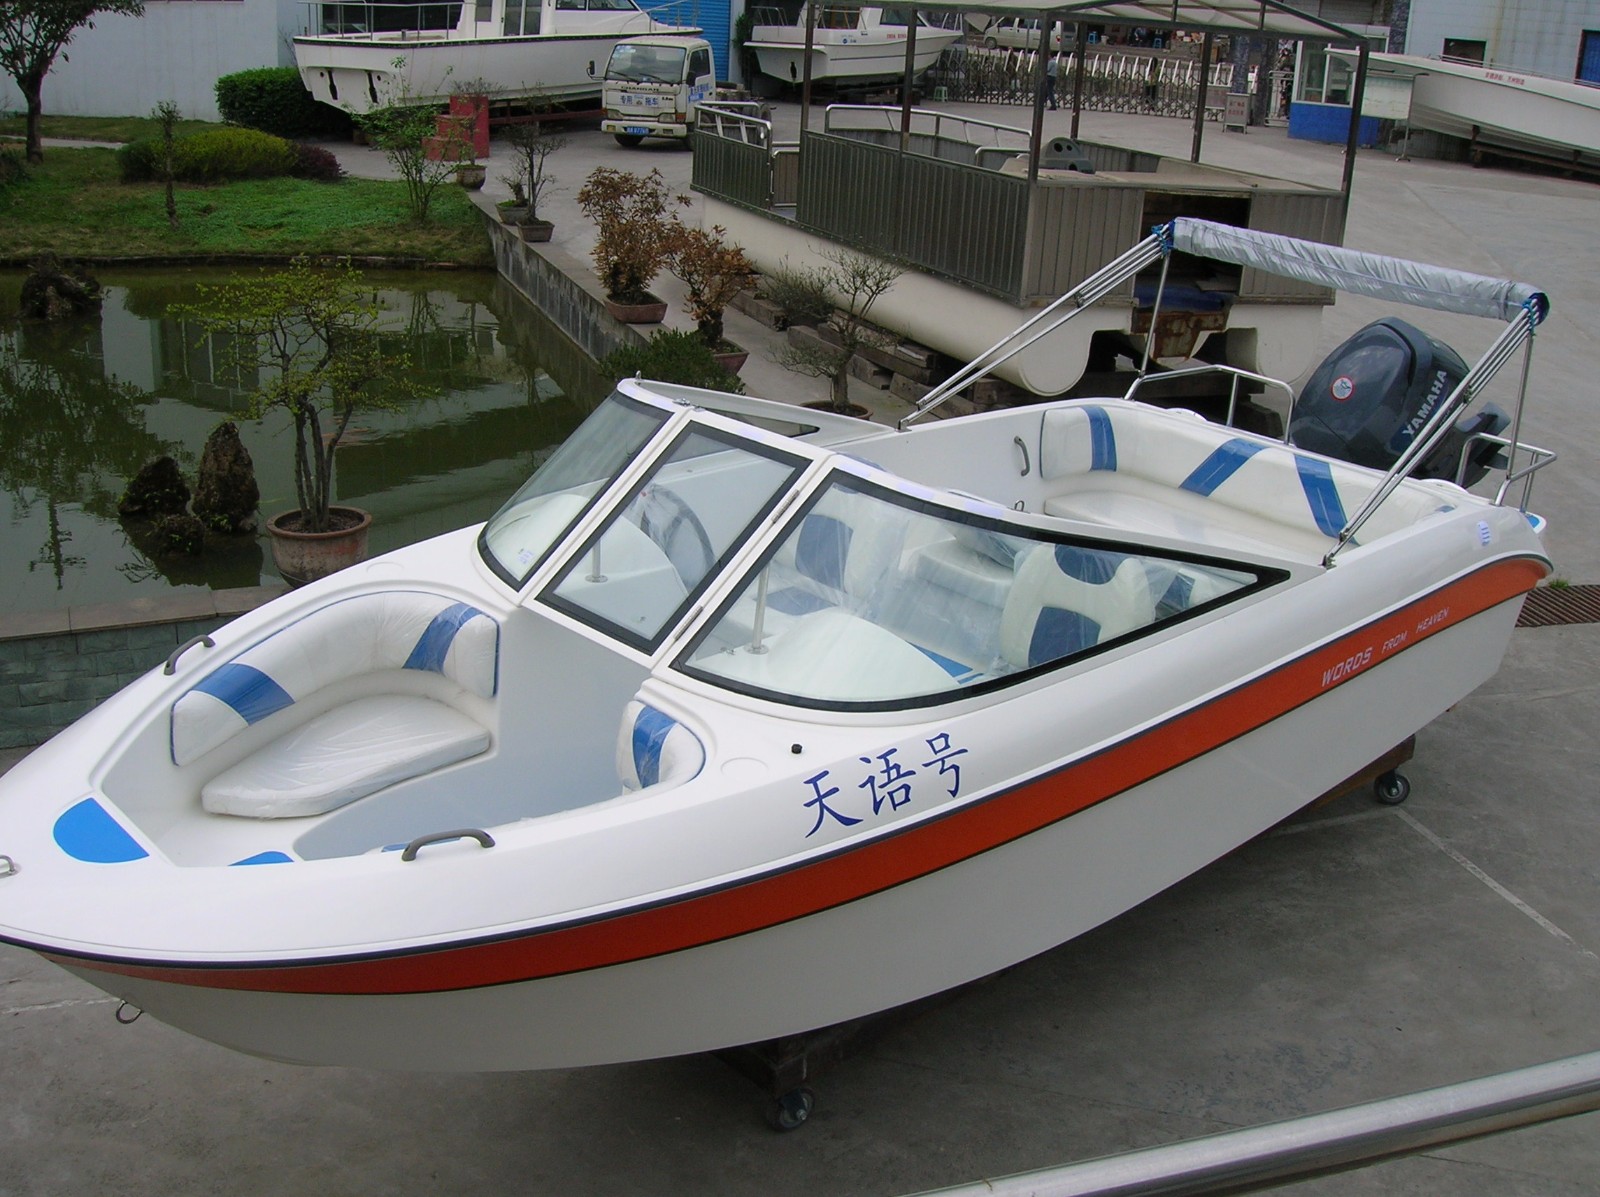 快艇 - 快艇 - Yacht Holimood Boat Rental Platform - 车越野 园林 城市风光与风景名胜 婚礼 学习 ...